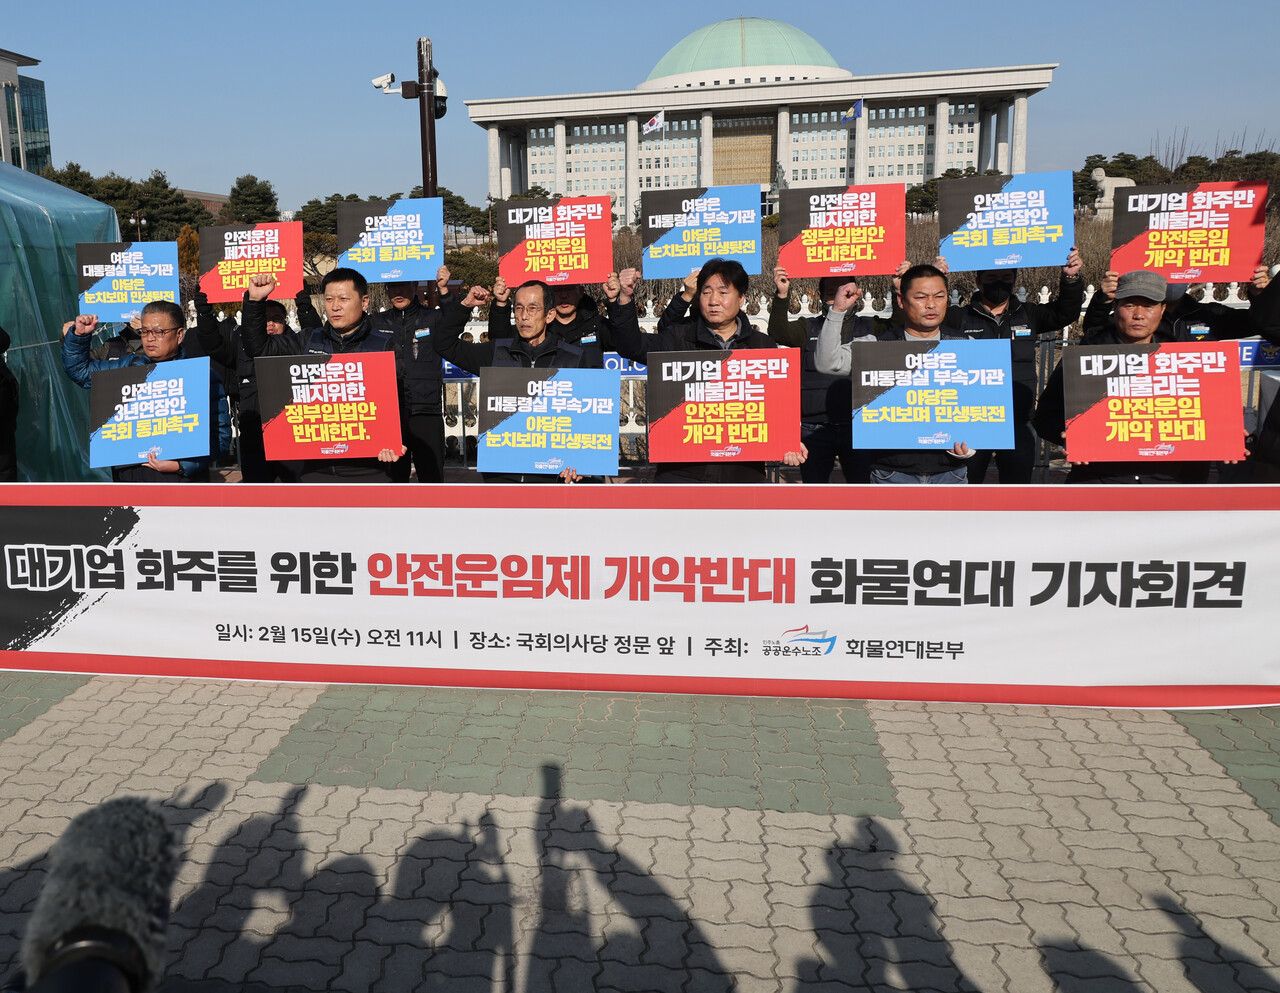 지난 15일 민주노총 공공운수노조 화물연대가 국회 앞에서 기자회견을 하고 있다. 연합뉴스